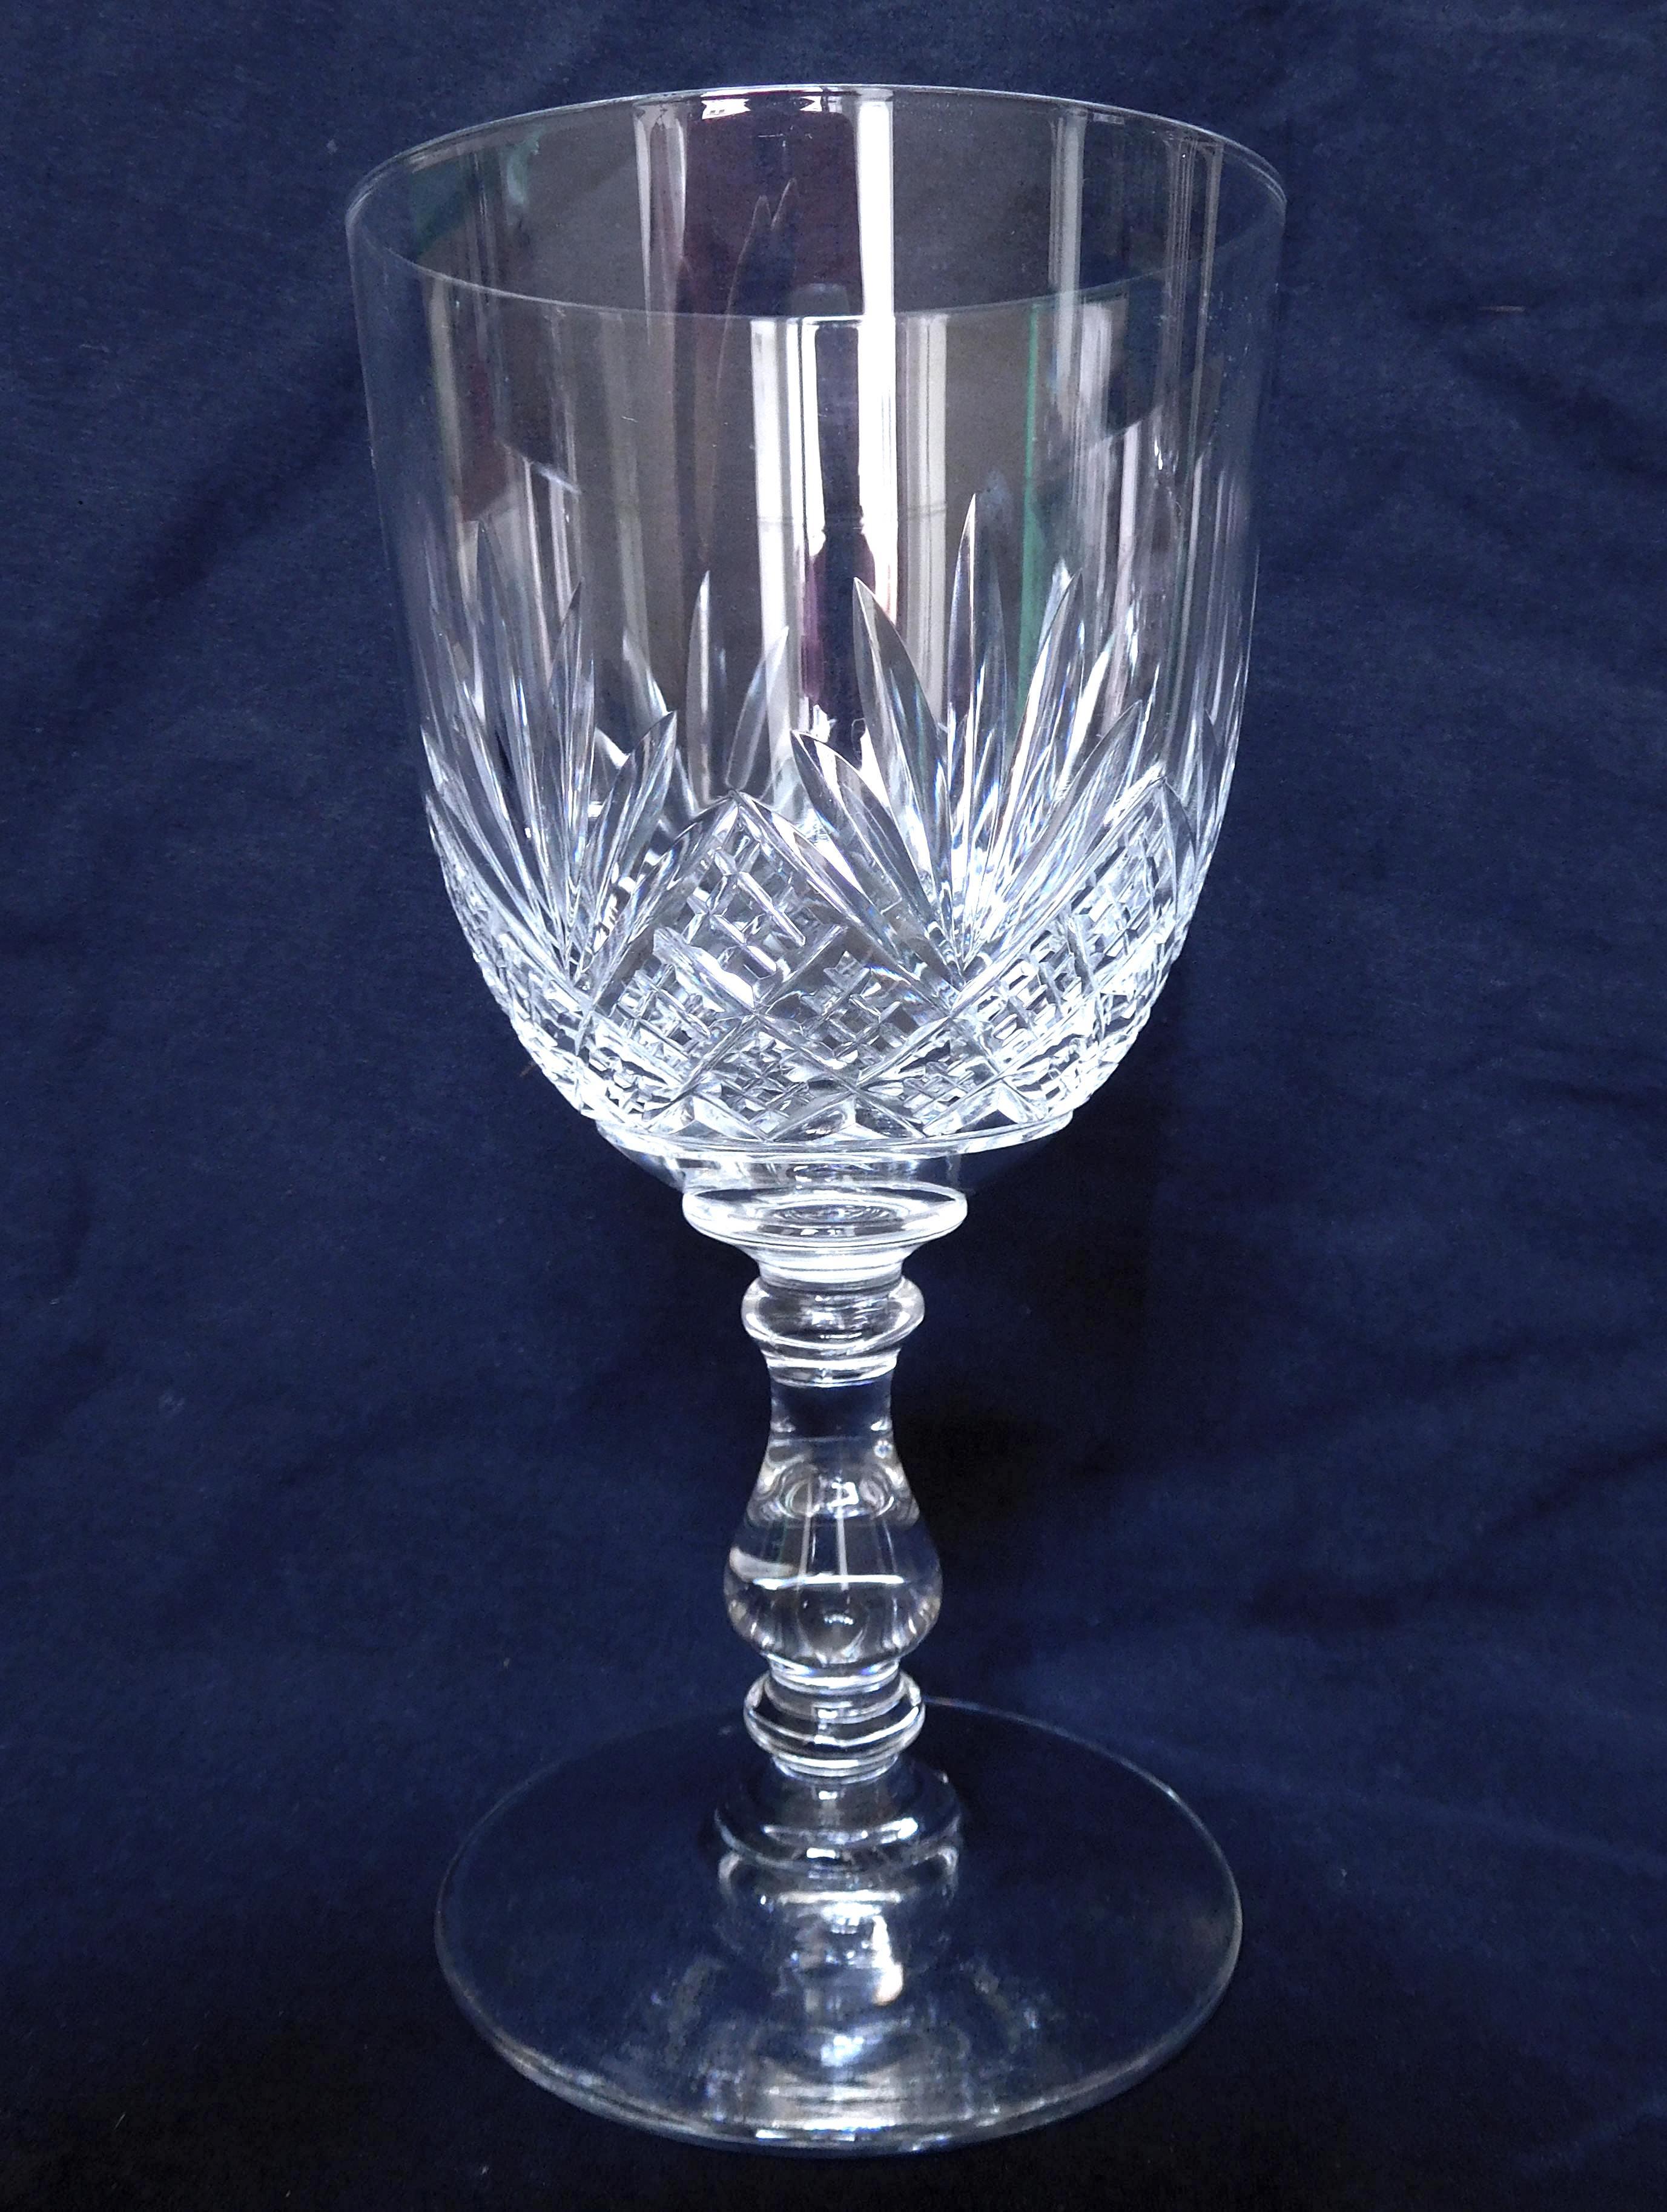 Ensemble de 3 verres en cristal de Baccarat, modèle dit de Douai, composé de :
- 1 verre à eau (15,5 cm de haut)
- 1 verre à vin (12,3 cm de haut)
- 1 verre à porto (10,3 cm de haut) ou verre à vin blanc (à la fin du 19e siècle et au début du 20e